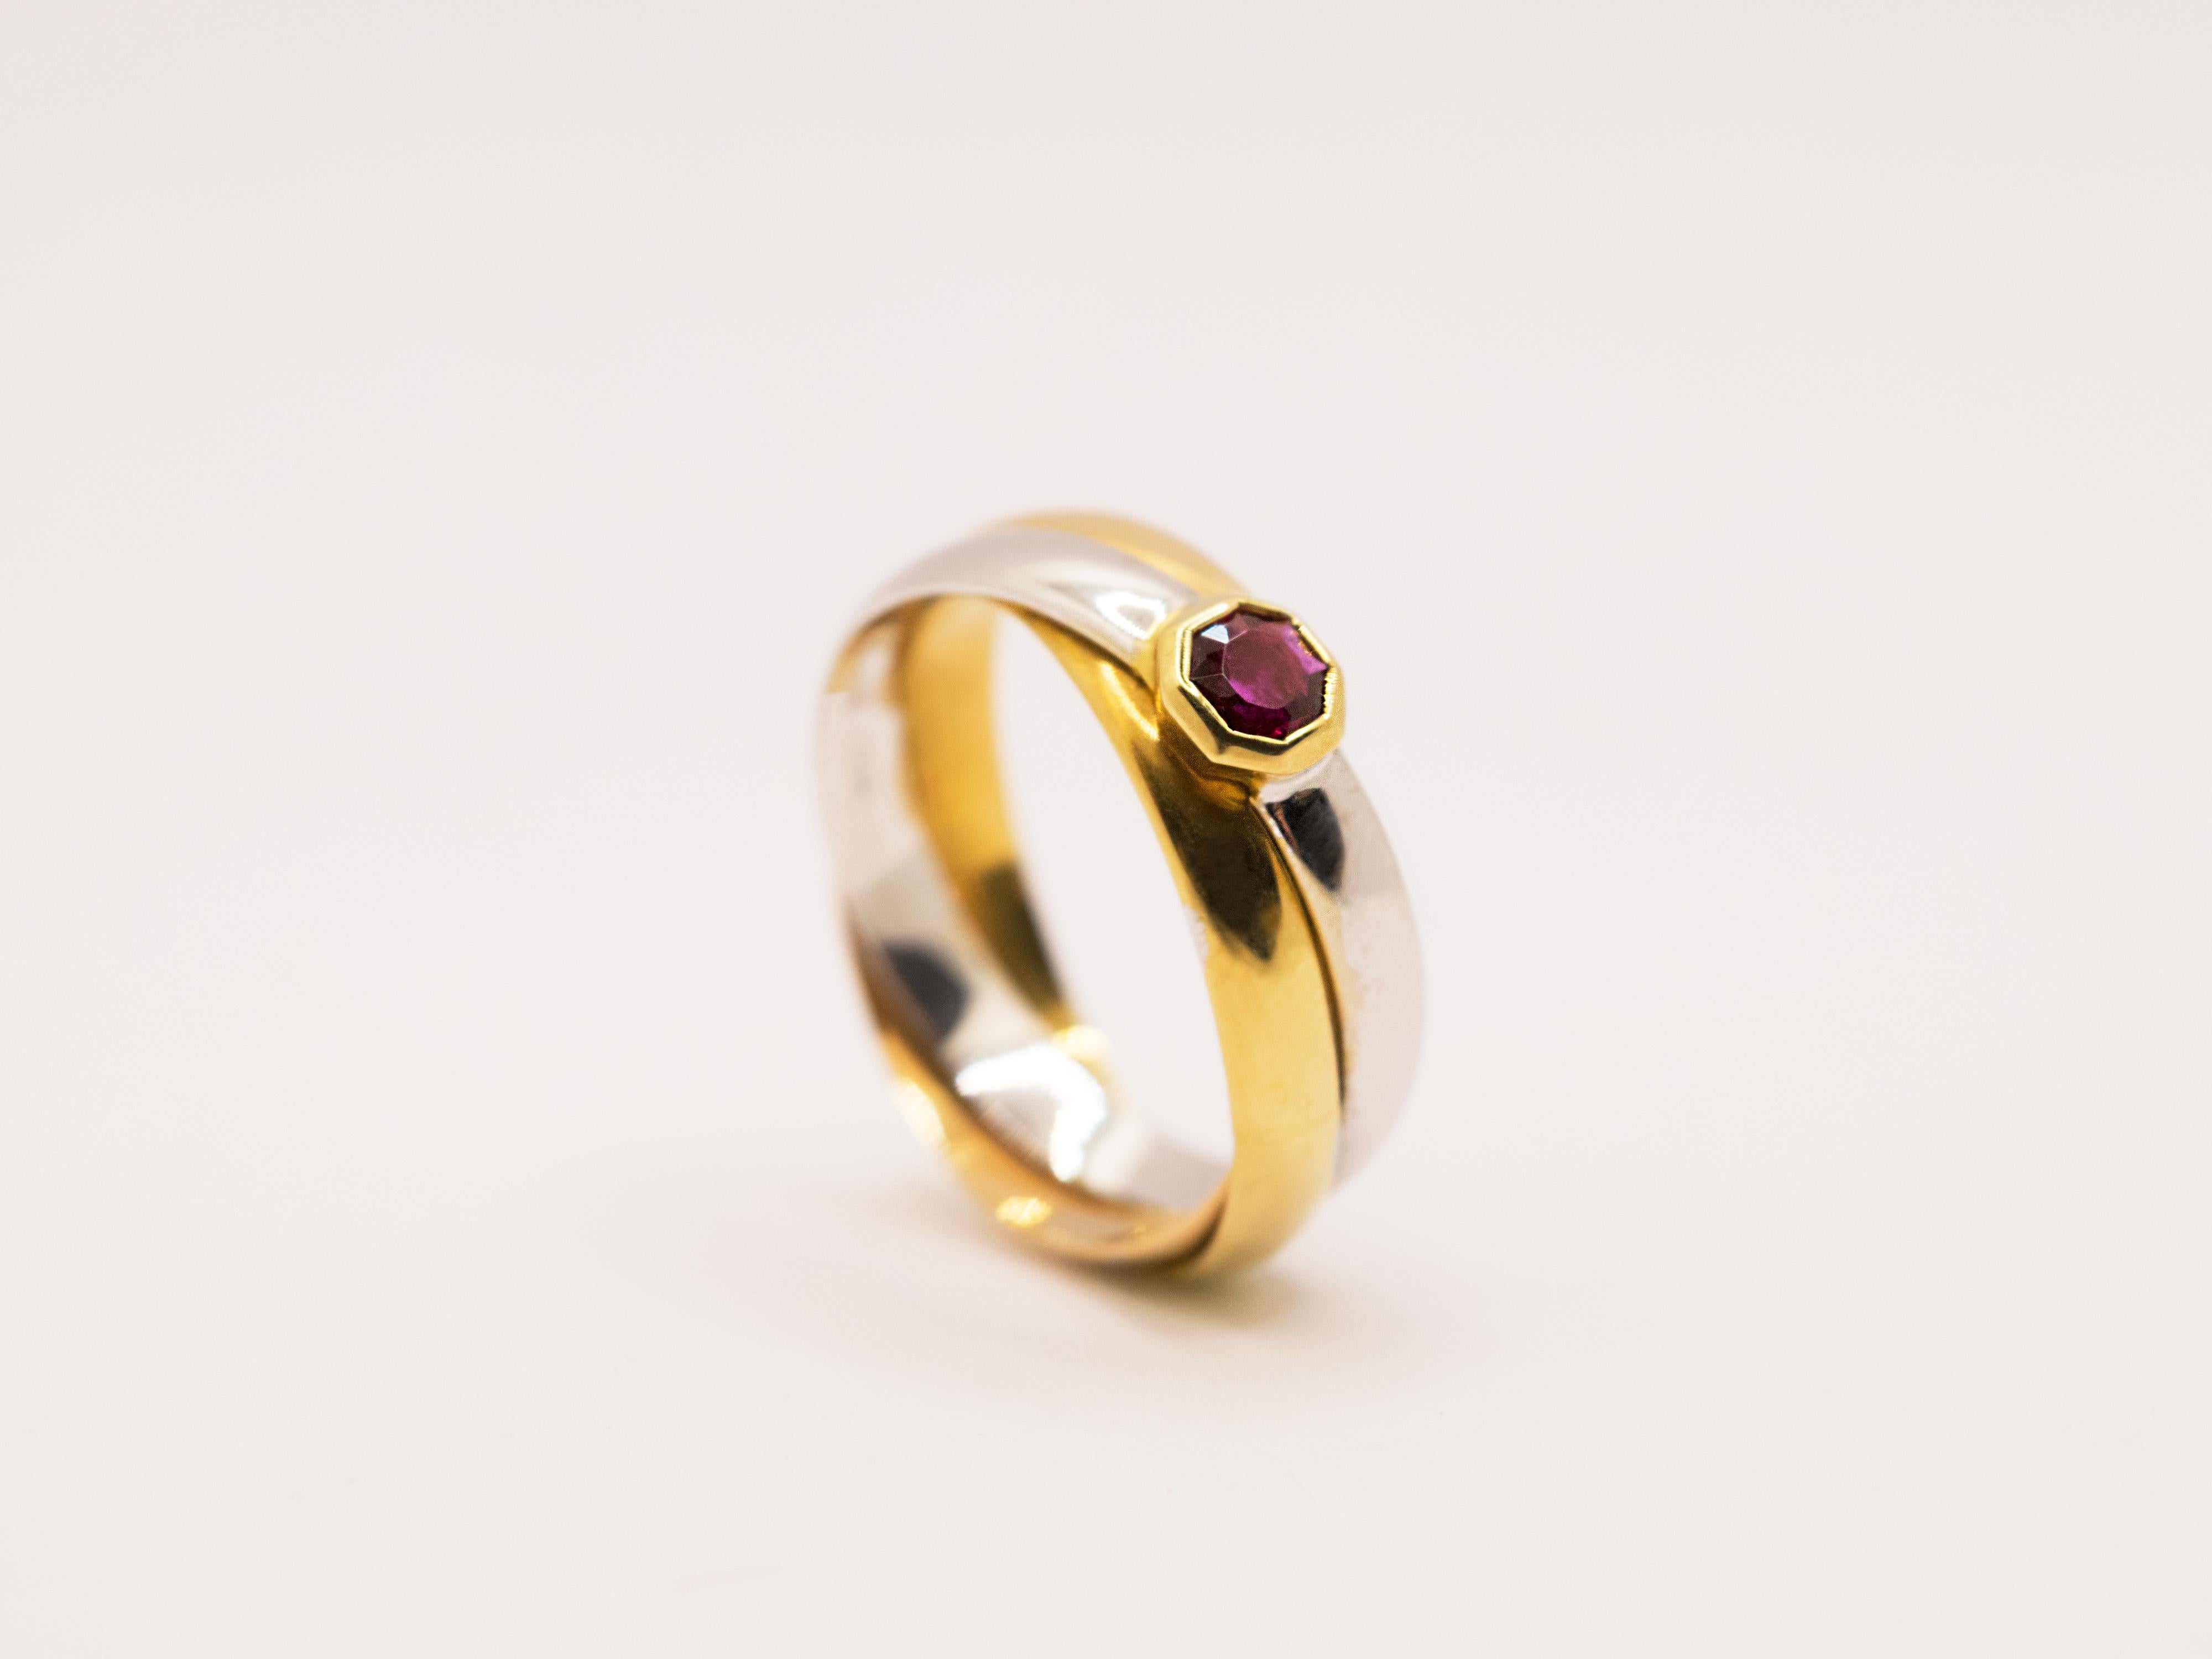 Un classico anello a fascia intrecciata nelle tre tonalità dell'oro dallo stile essenziale ed elegante.
Questo anello è composto da tre fedi, una gialla una rosa e una bianca , tutte in oro 18 Kt dal peso di gr 5.10.
Reca il marchio 750 e il punzone